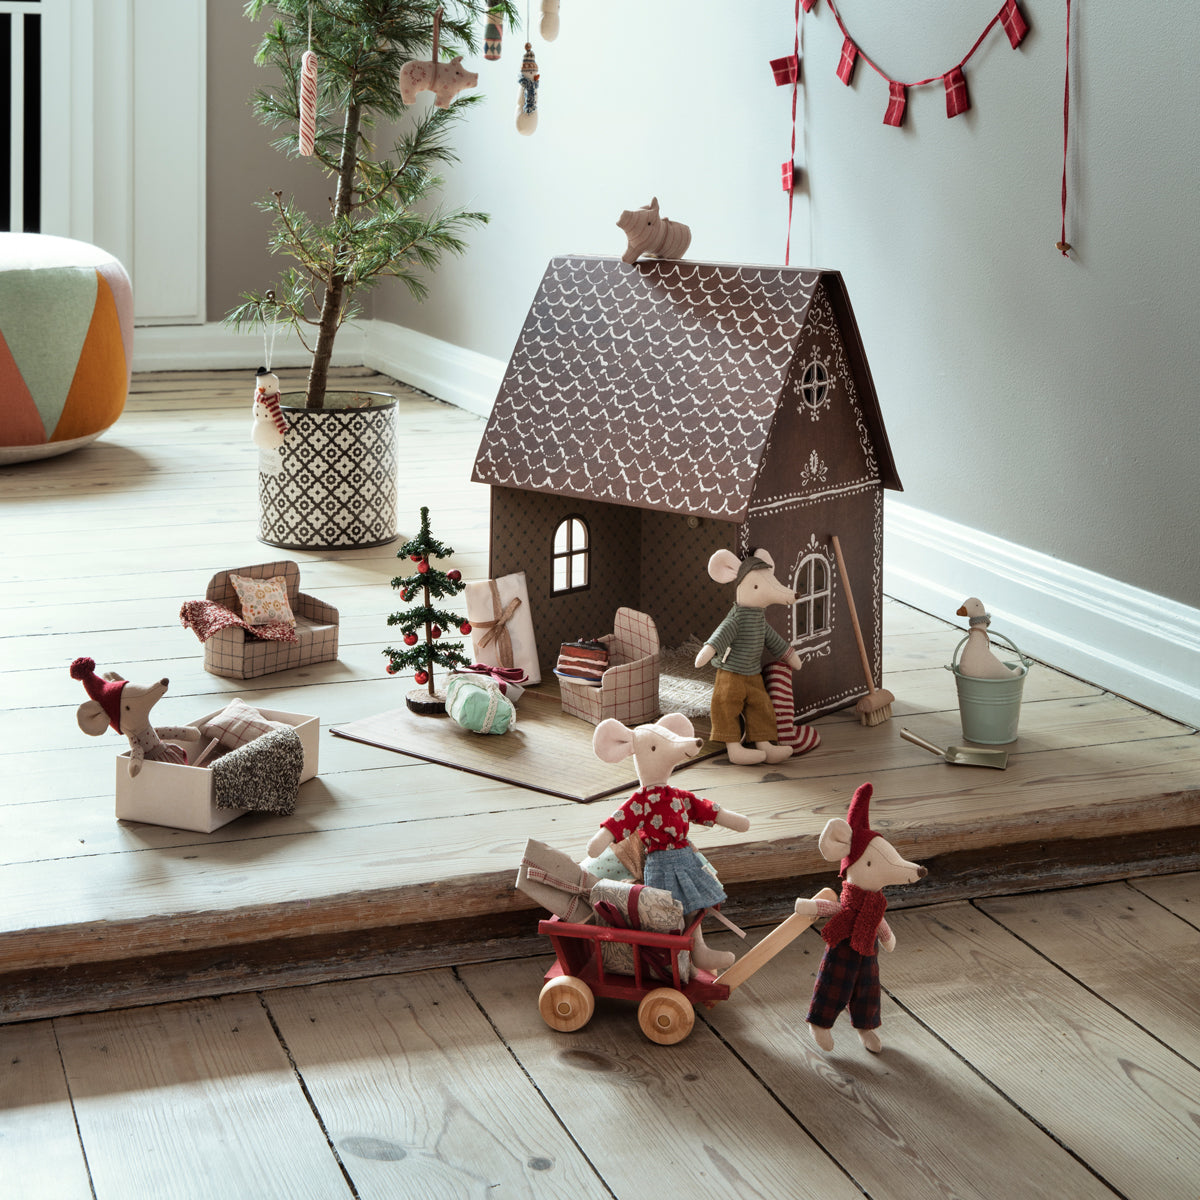 Maileg Broom set miniature dolls house furniture